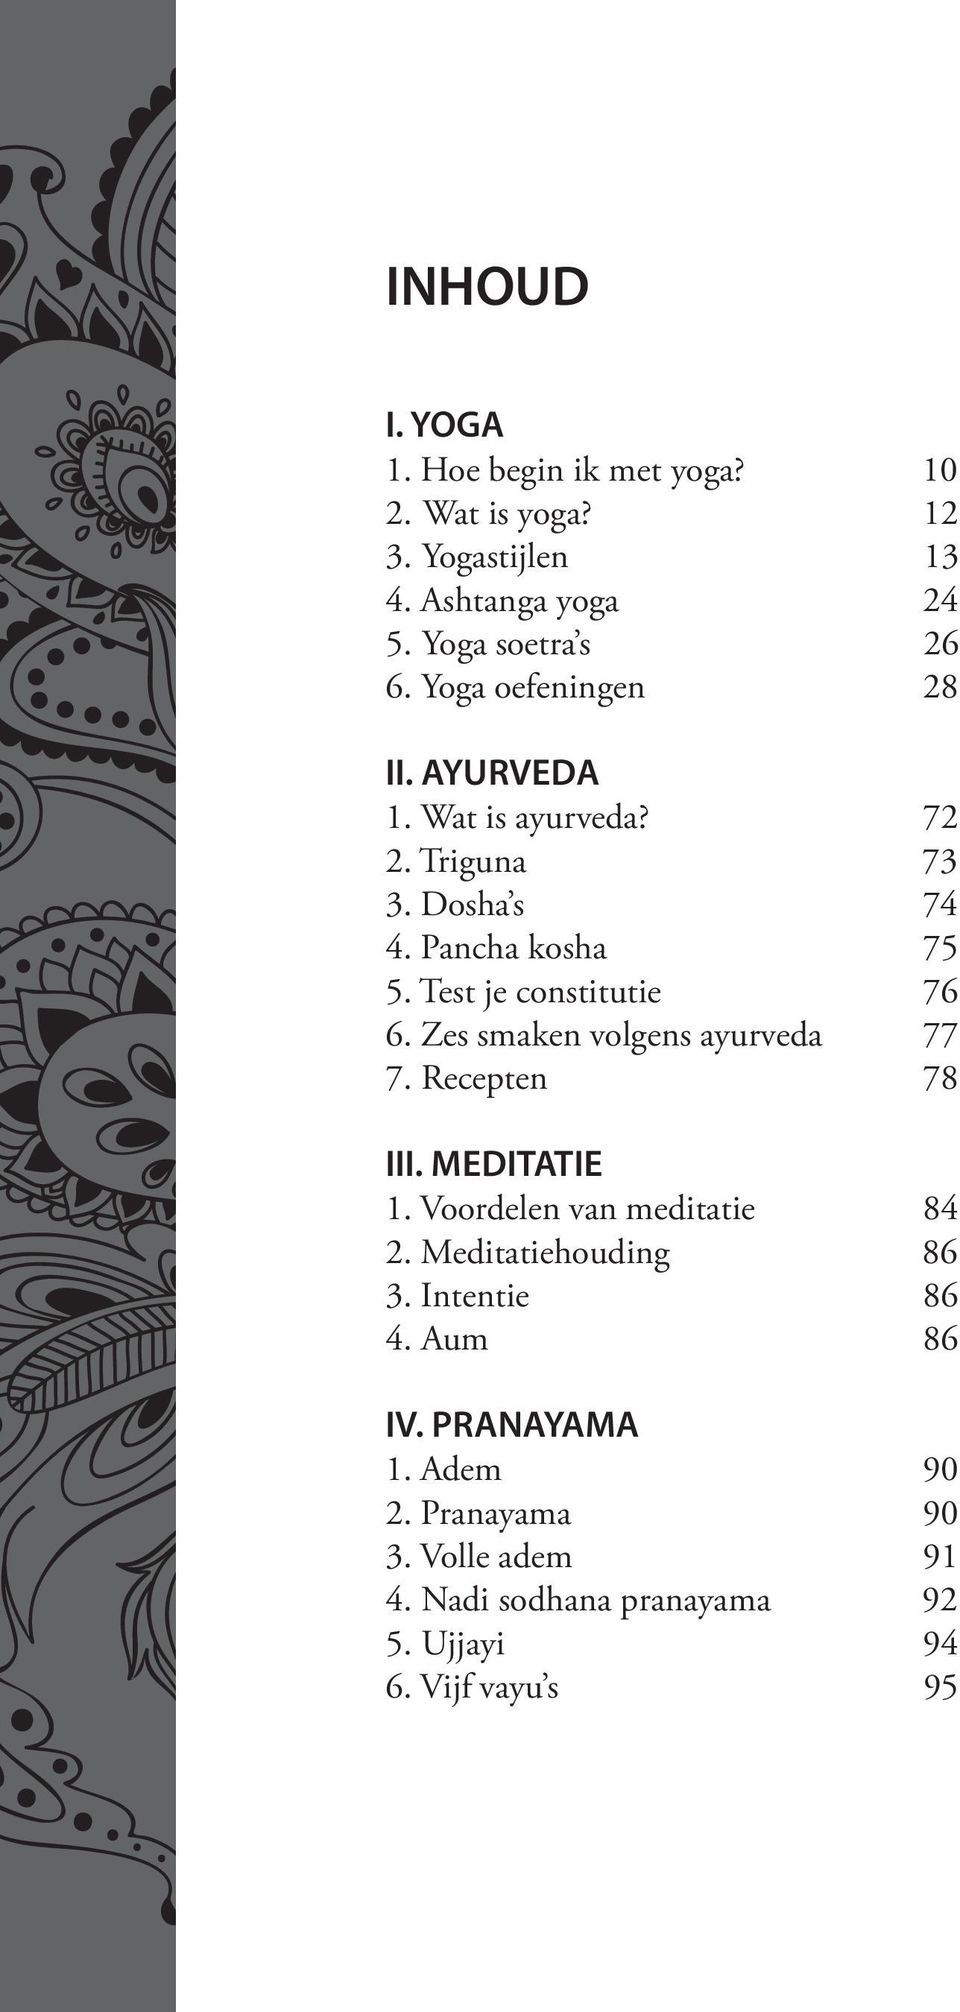 Test je constitutie 76 6. Zes smaken volgens ayurveda 77 7. Recepten 78 III. MEDITATIE 1. Voordelen van meditatie 84 2.